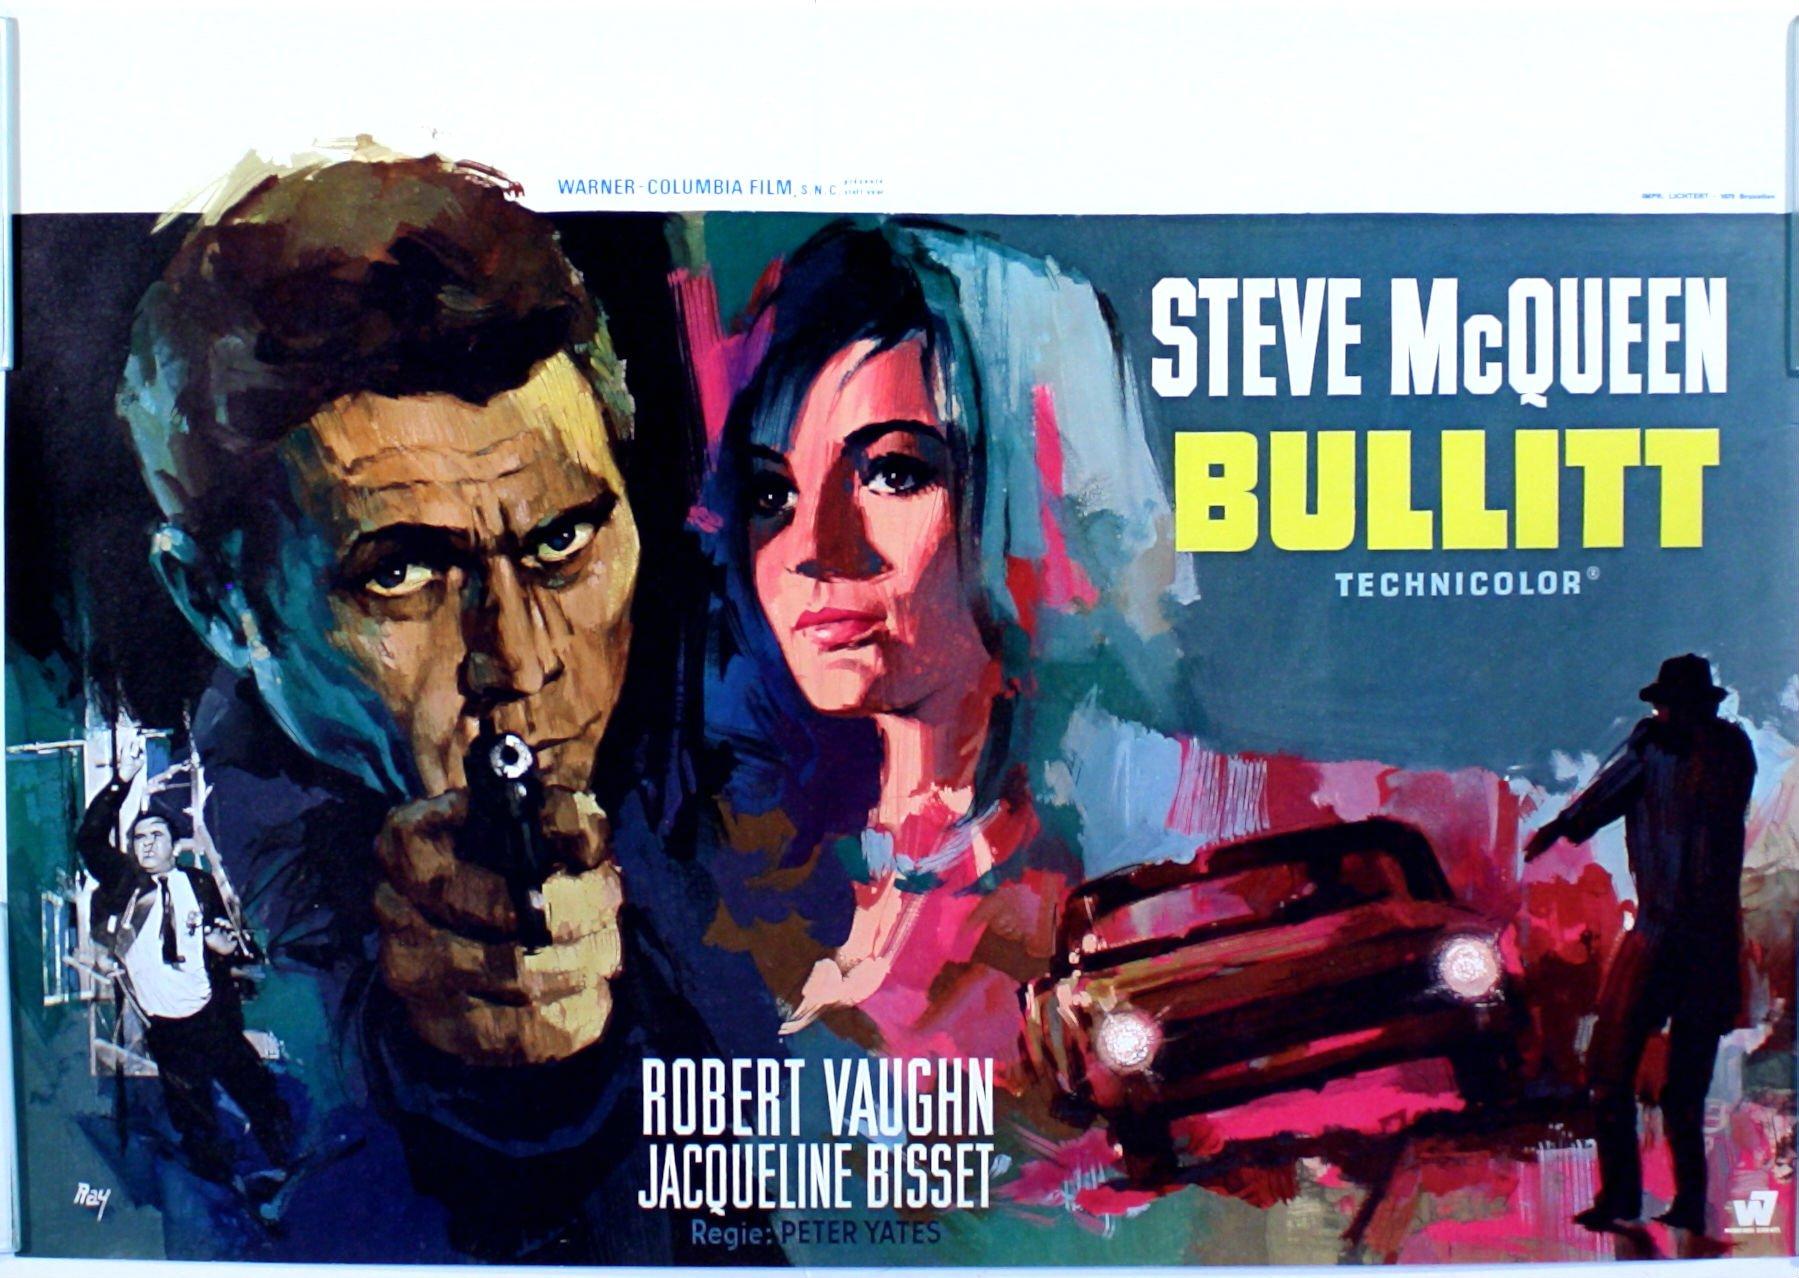 BULLITT action crime mystery movie film poster wallpaperx1278